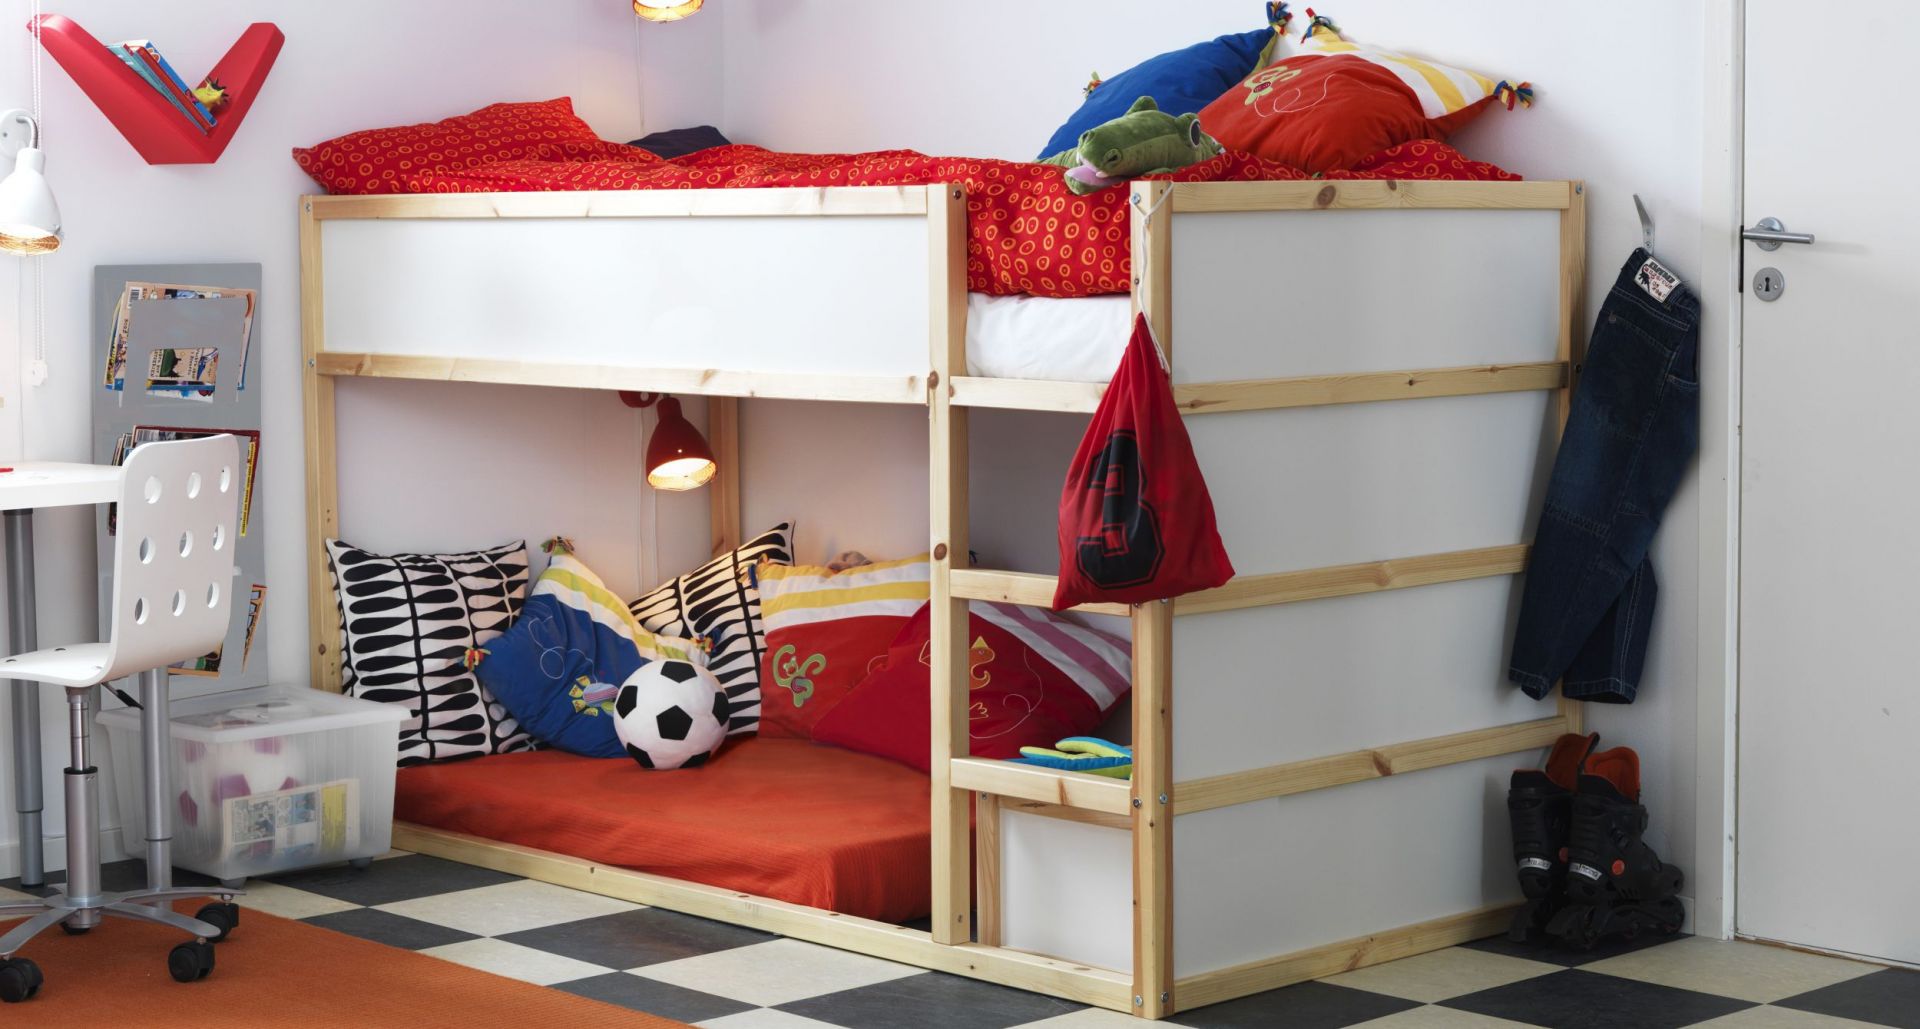 Łóżko piętrowe proponowane przez firmę IKEA. Fot. IKEA